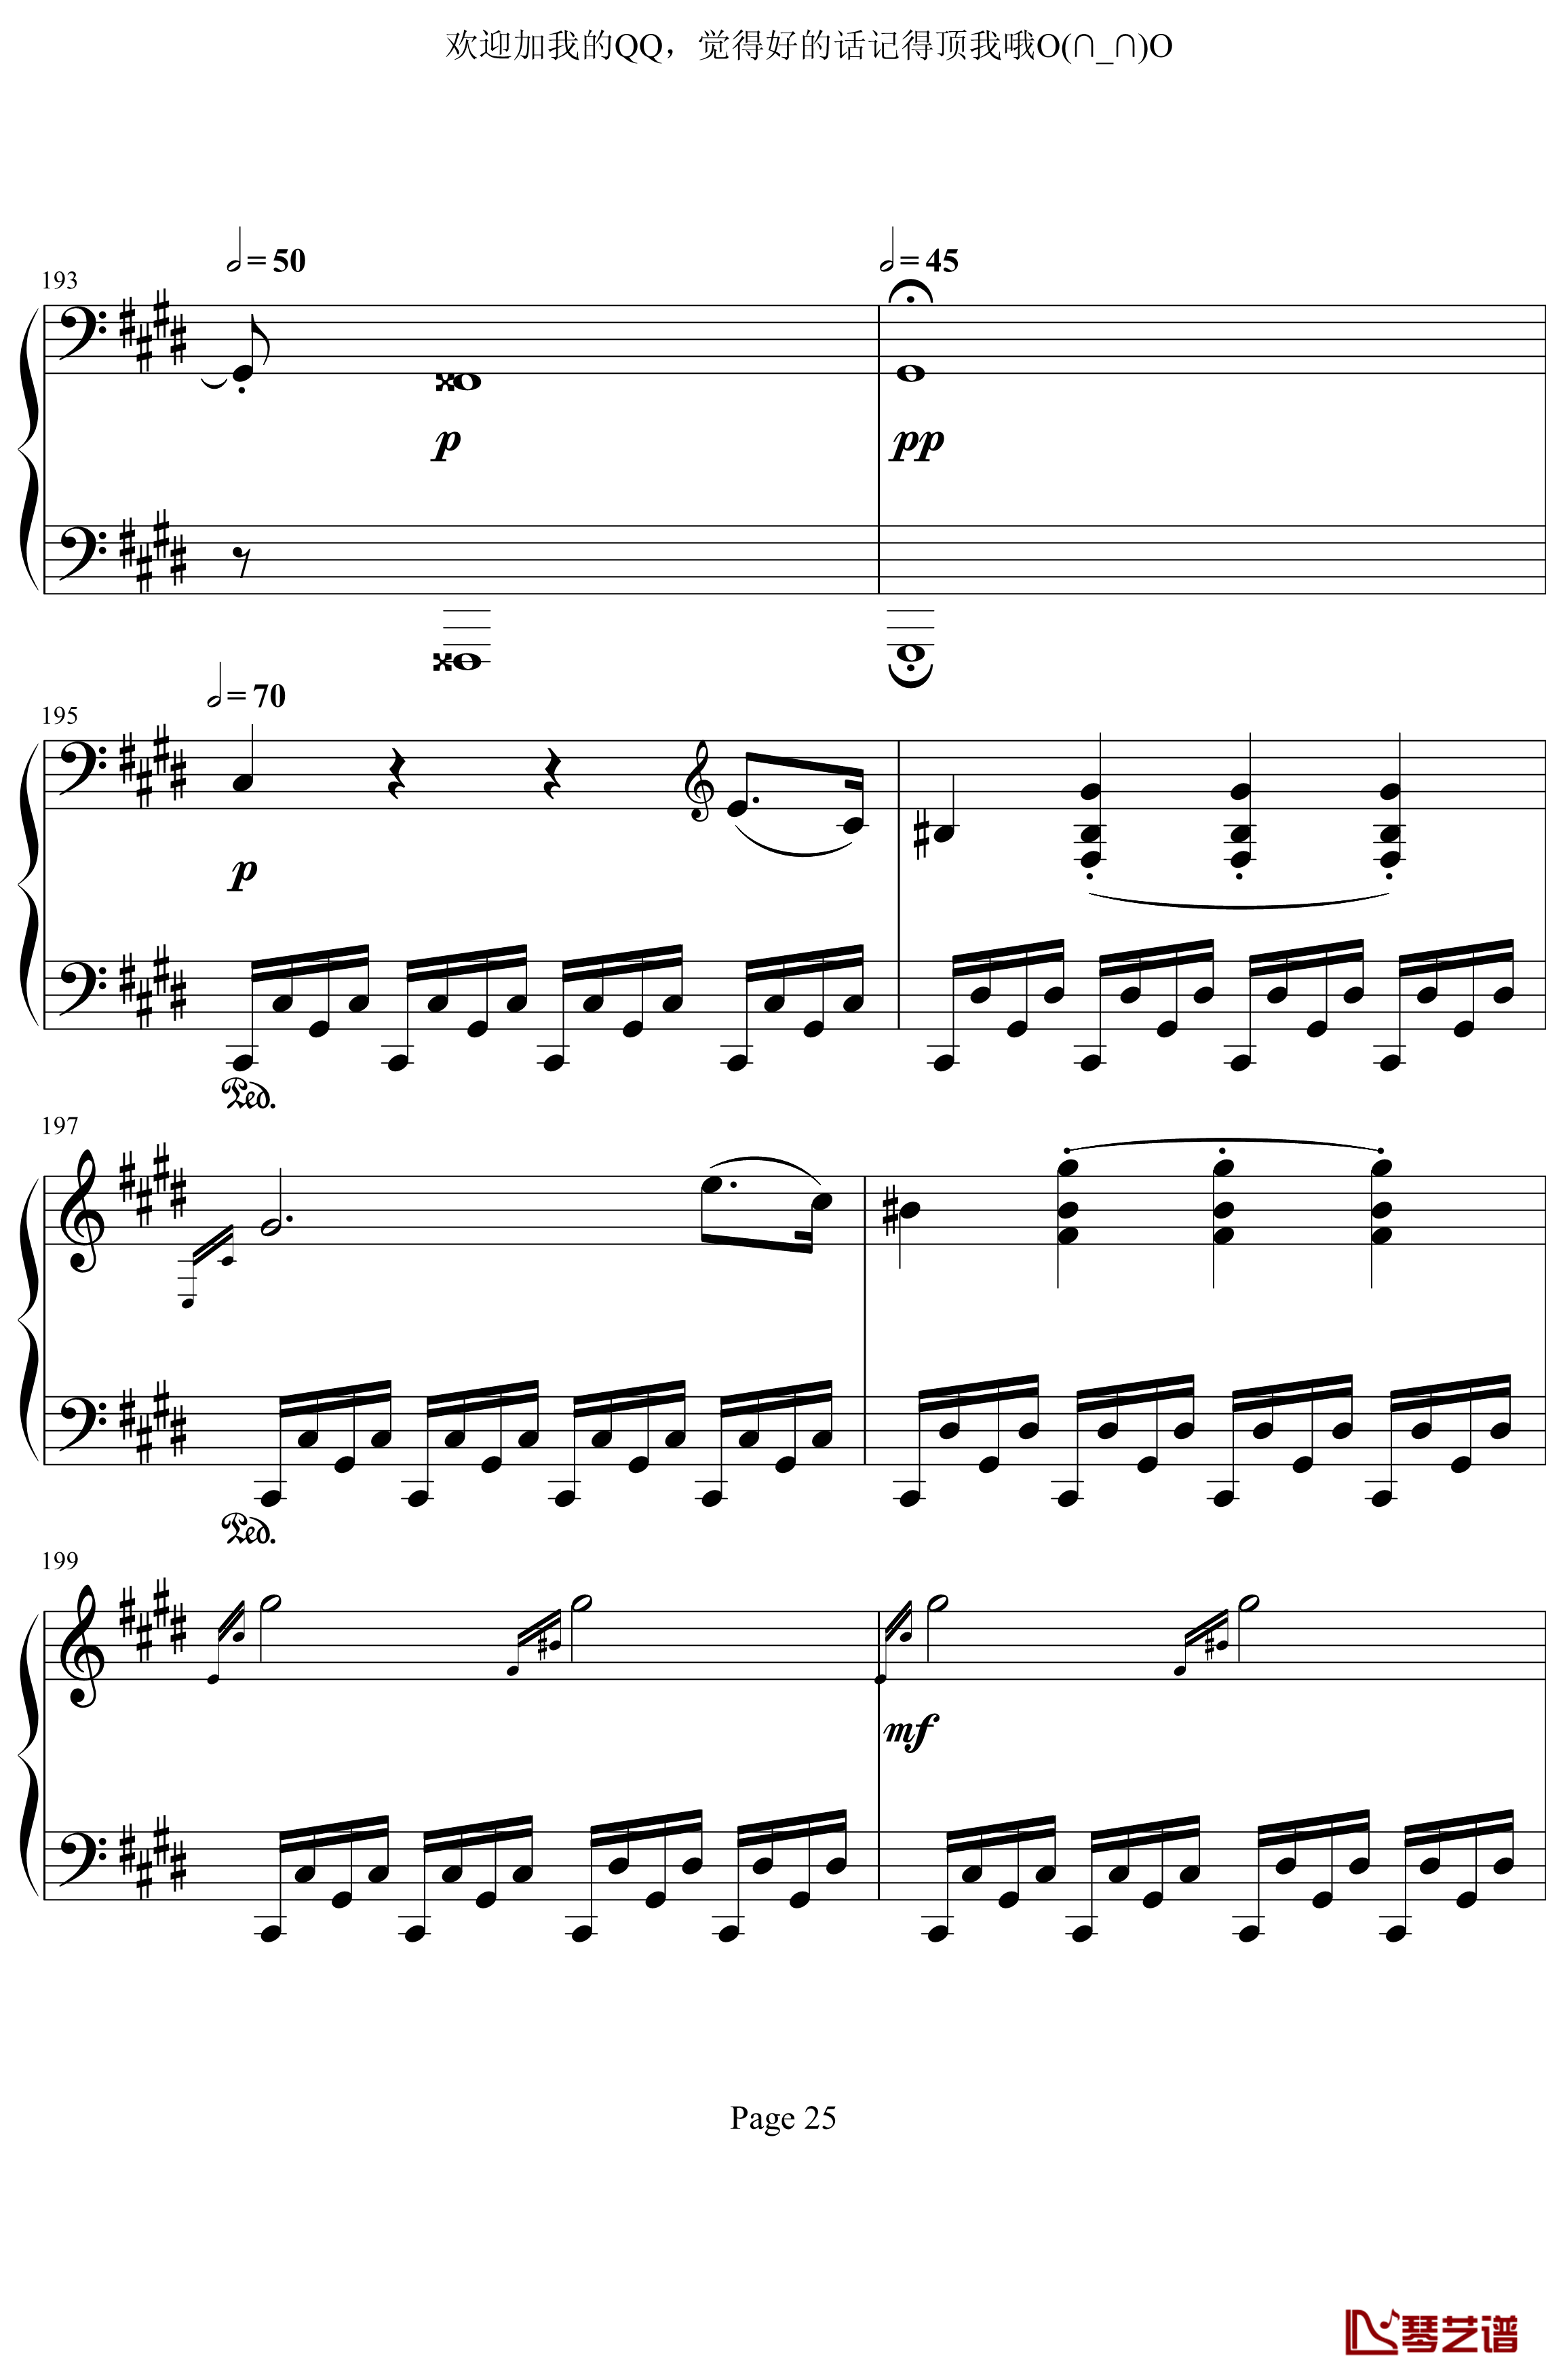 月光奏鸣曲第三乐章钢琴谱-贝多芬-beethoven25